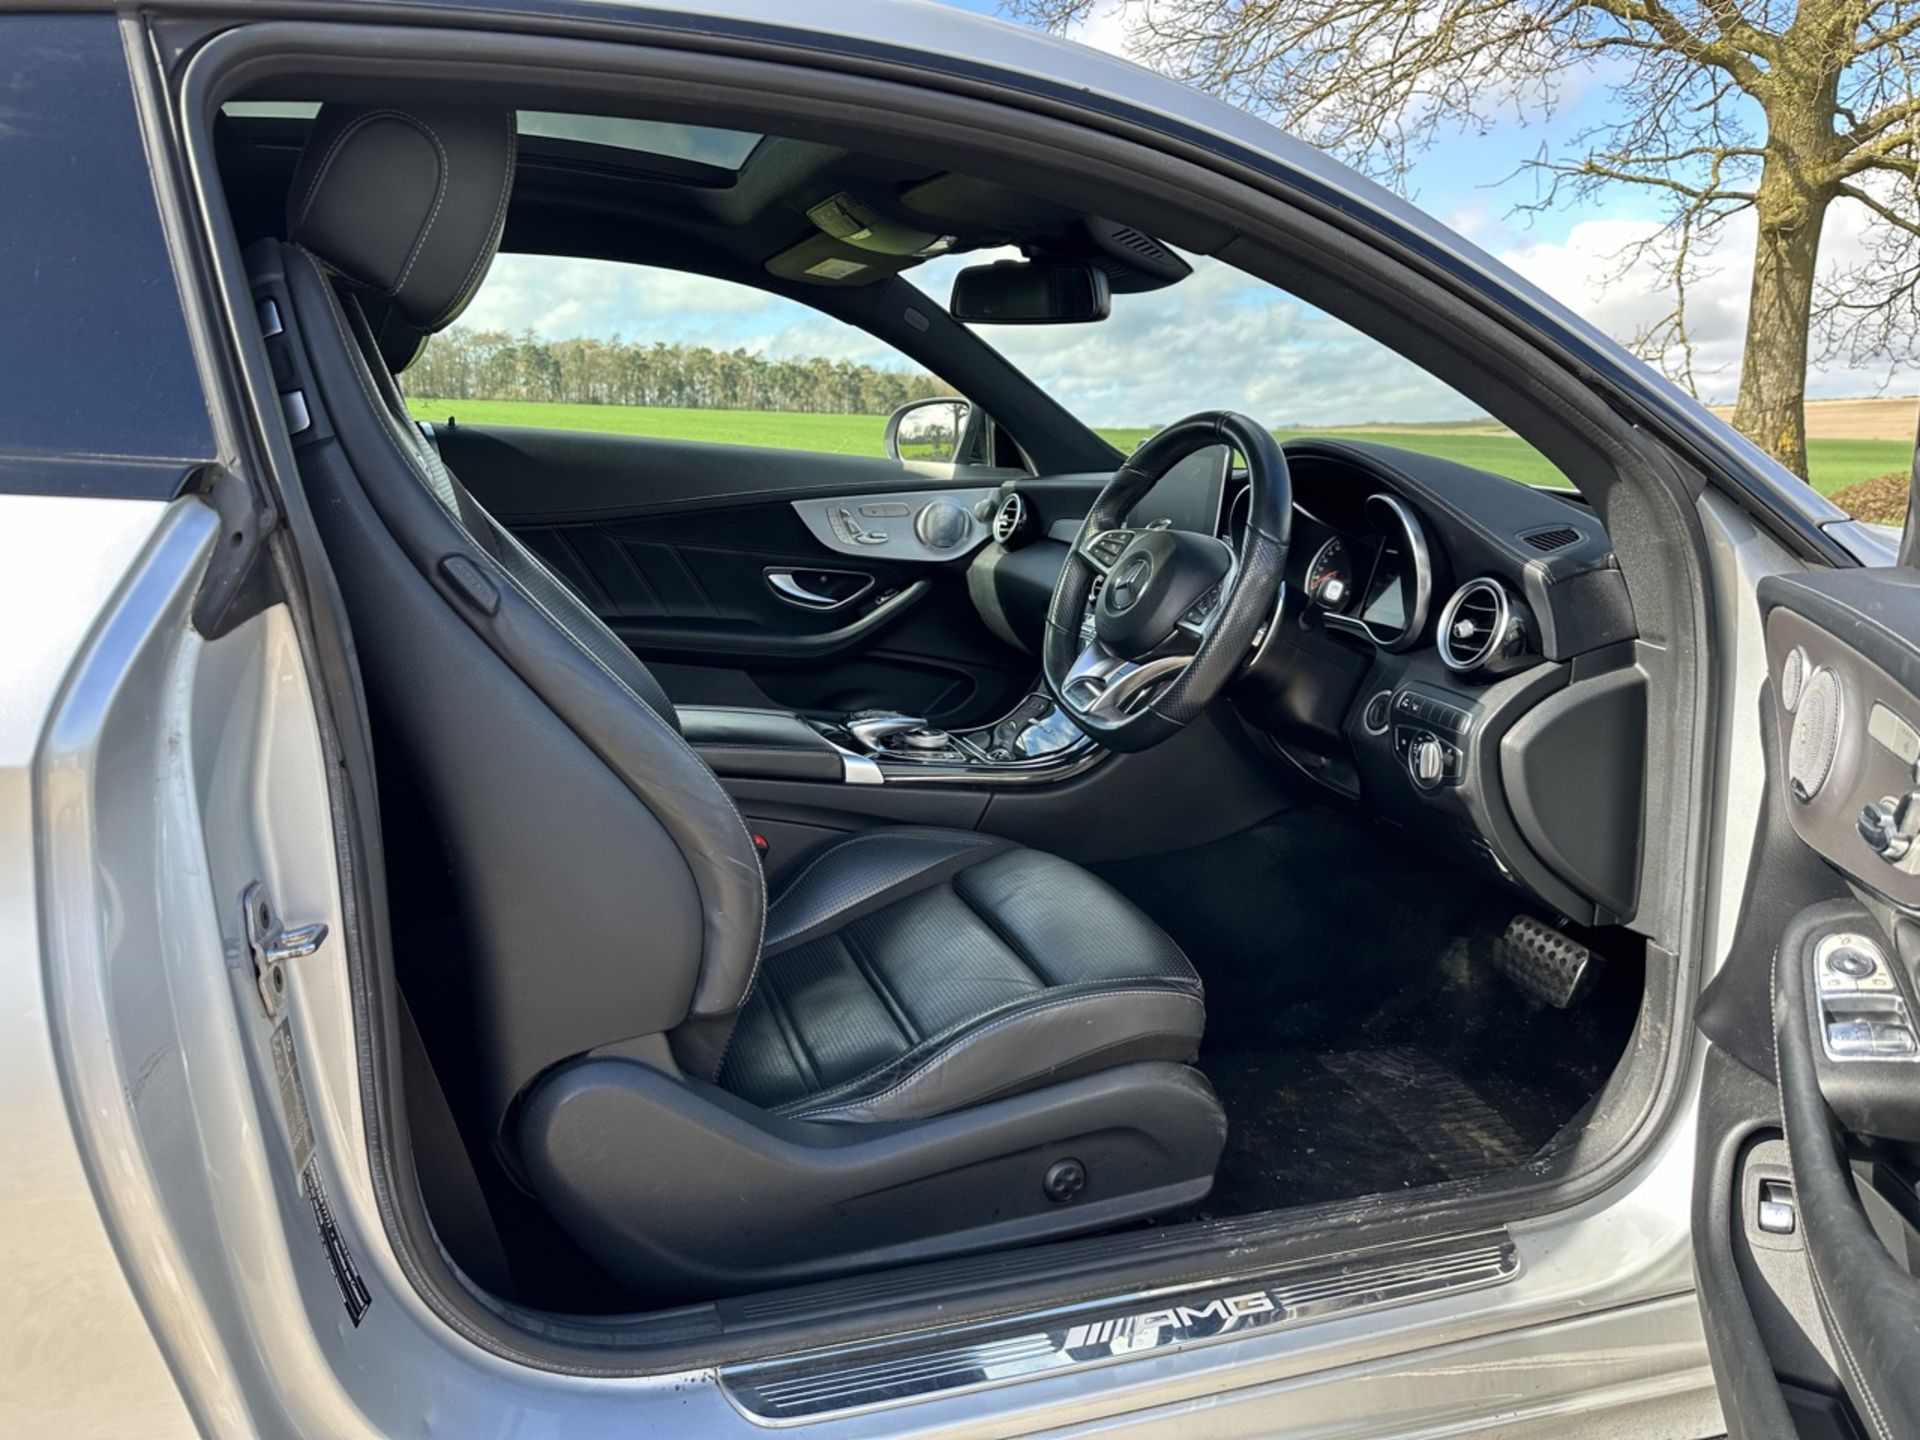 MERCEDES-BENZ C CLASS C63 Premium 2dr Coupe "Auto " (2019 Model) Automatic - 59K miles - SH PRINT - Image 15 of 26